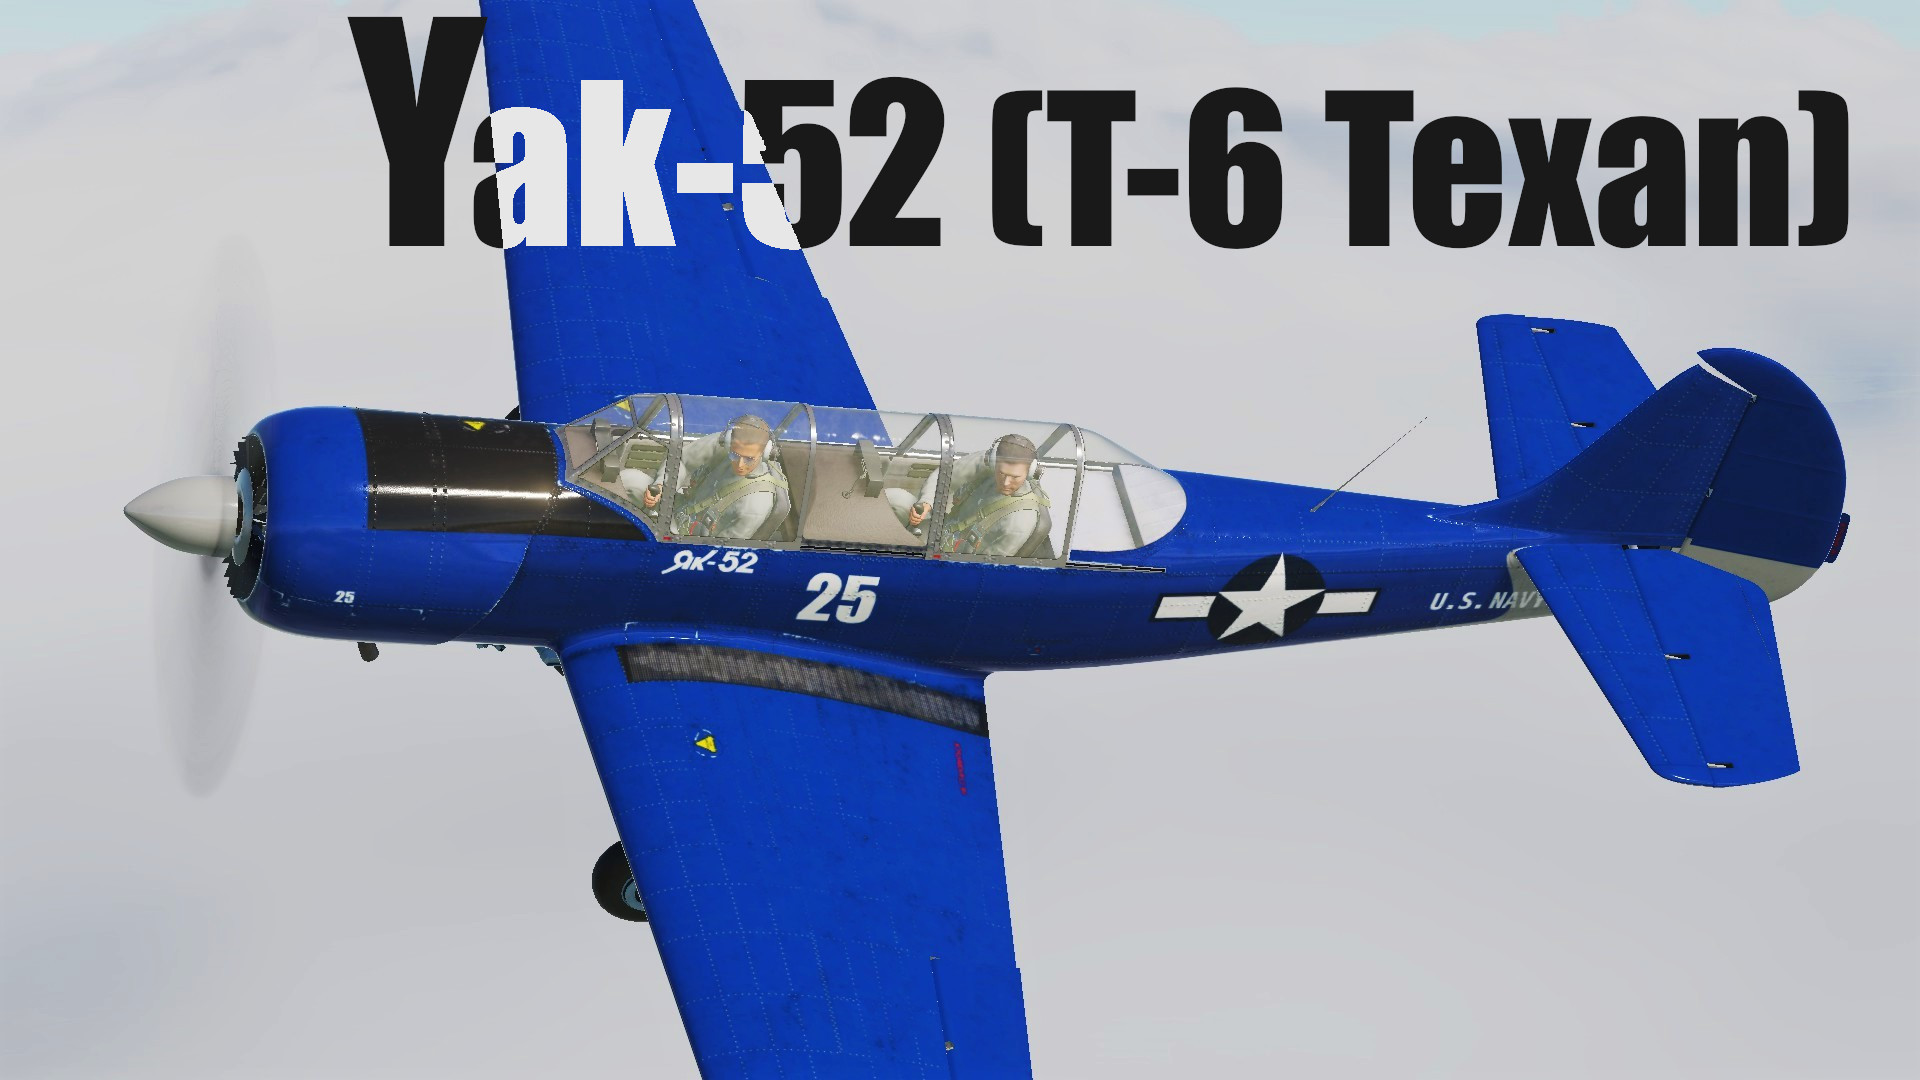  T-6 Texan-like Yak-52 Blue (Yaxan)